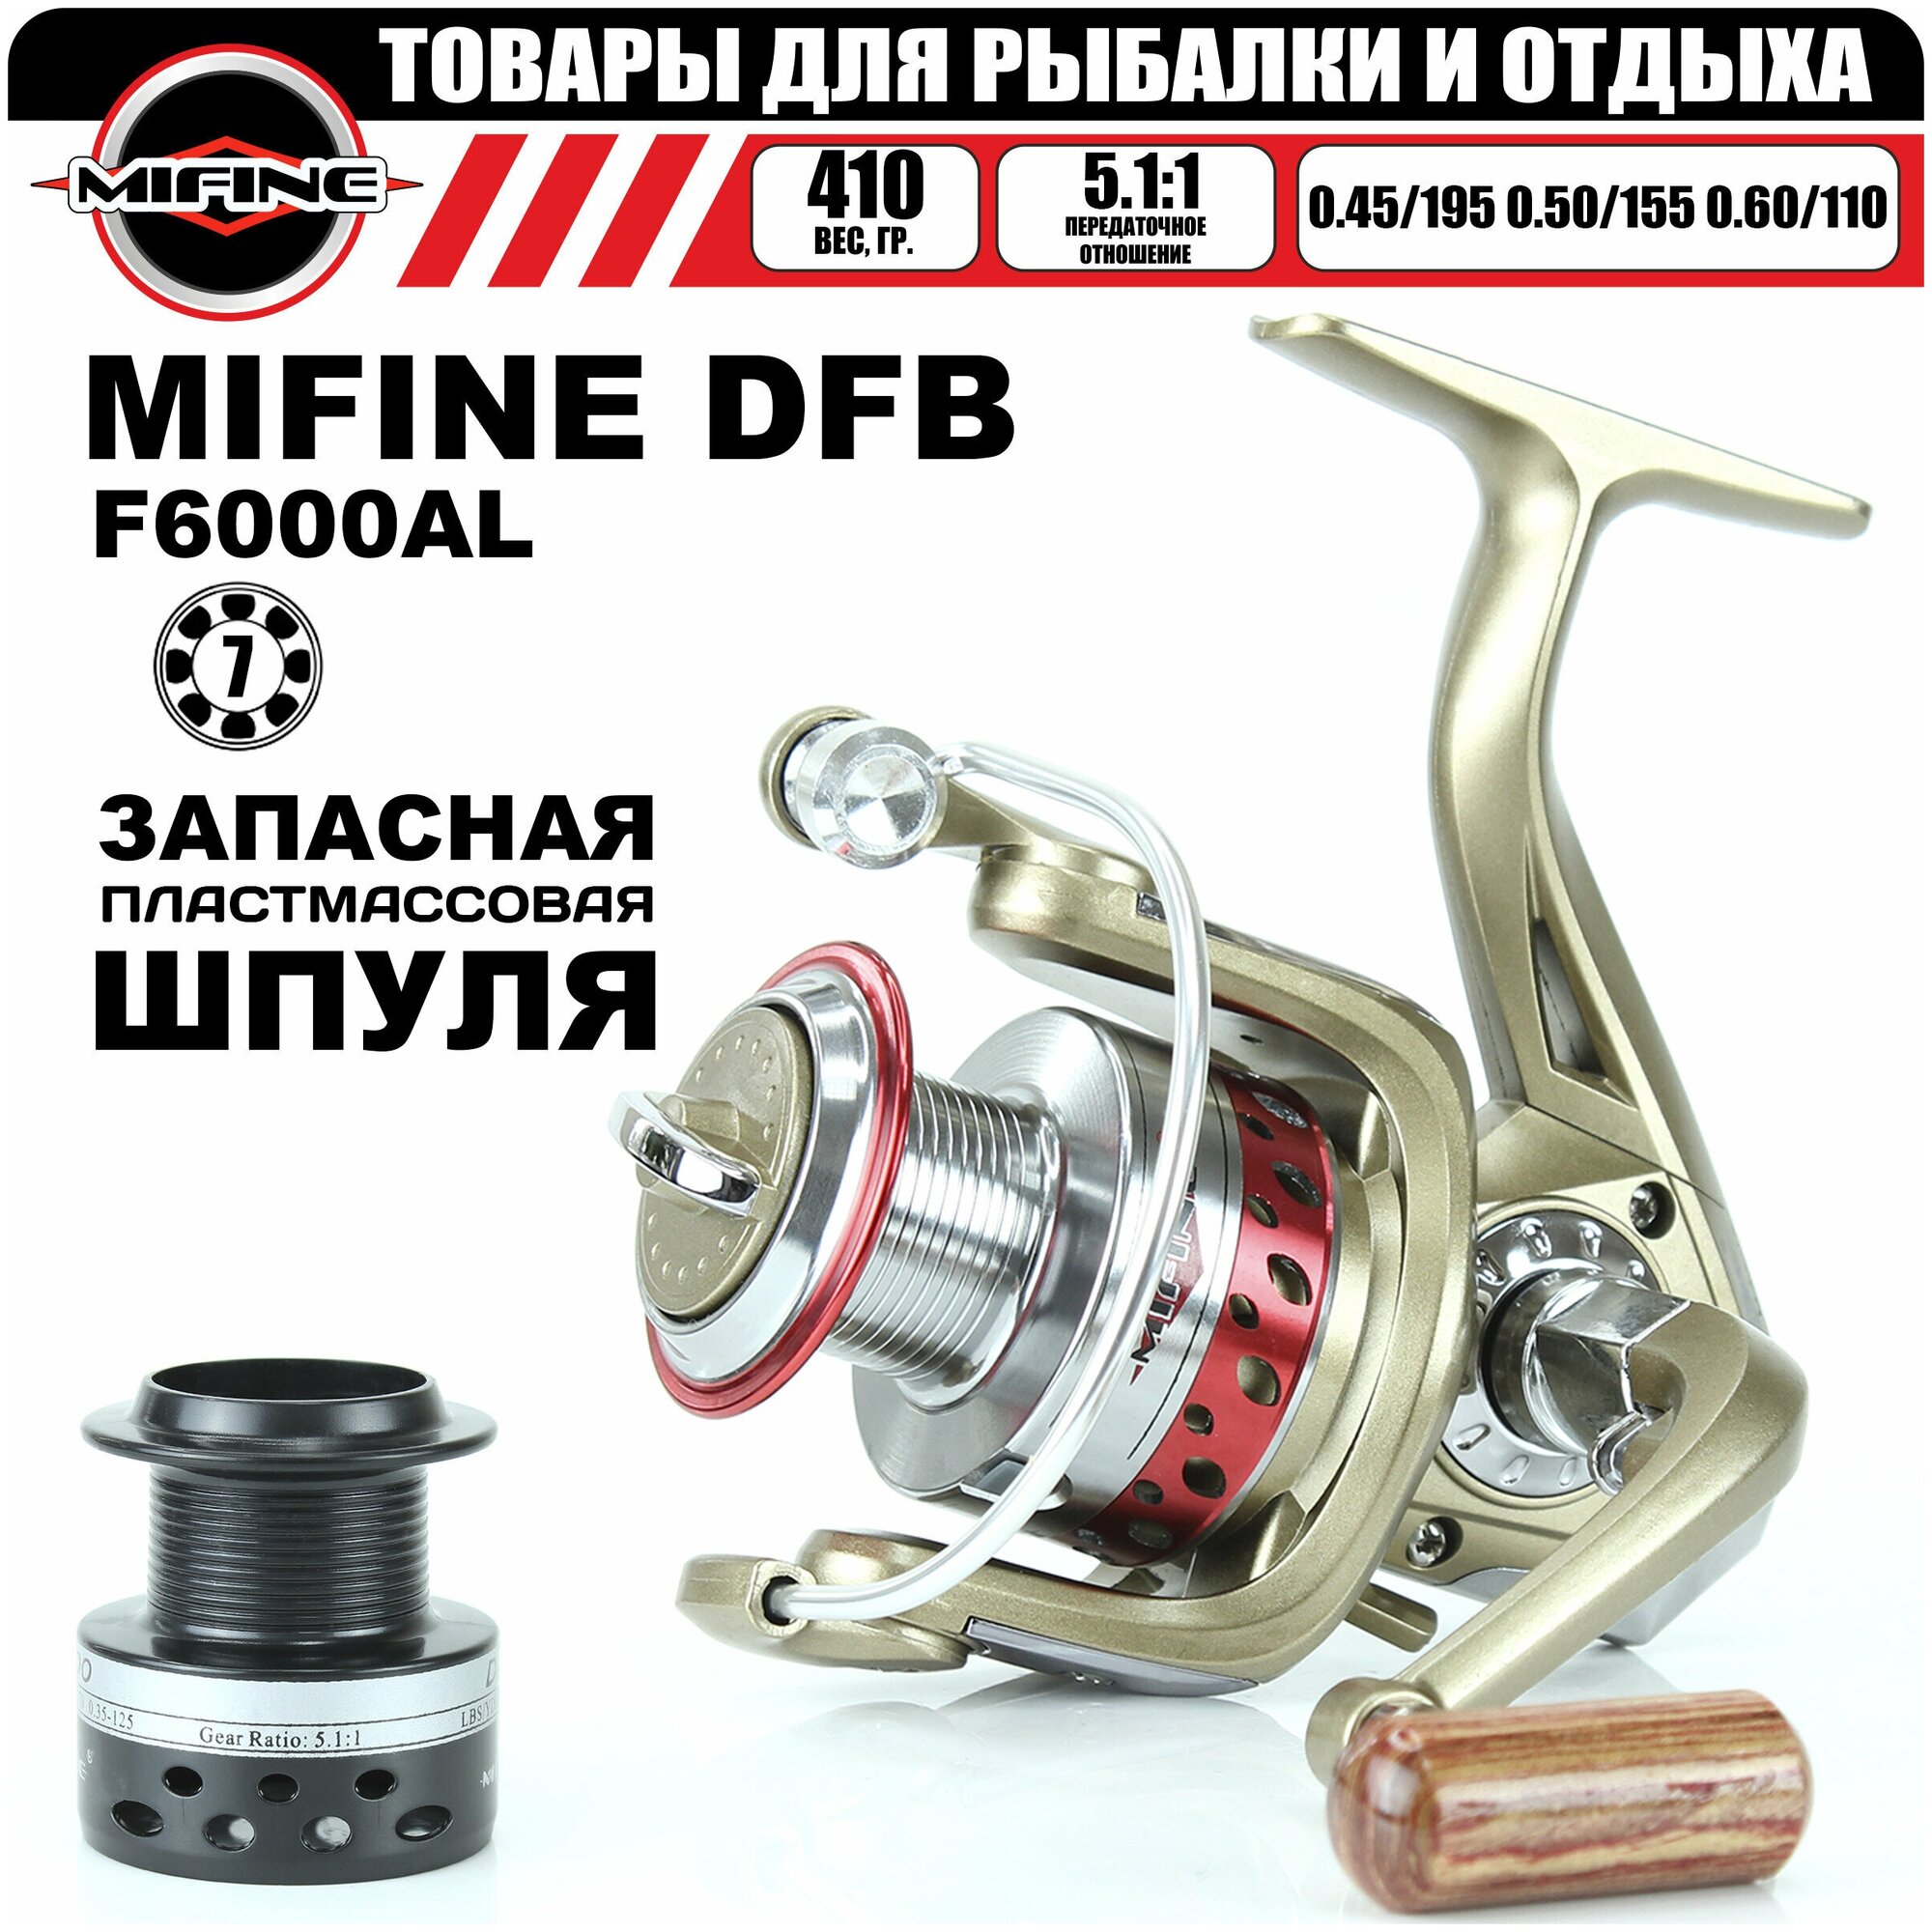 Катушка рыболовная MIFINE DFB 6000 6+1 подшипник, для рыбалки, для спиннинга, шпуля металлическая